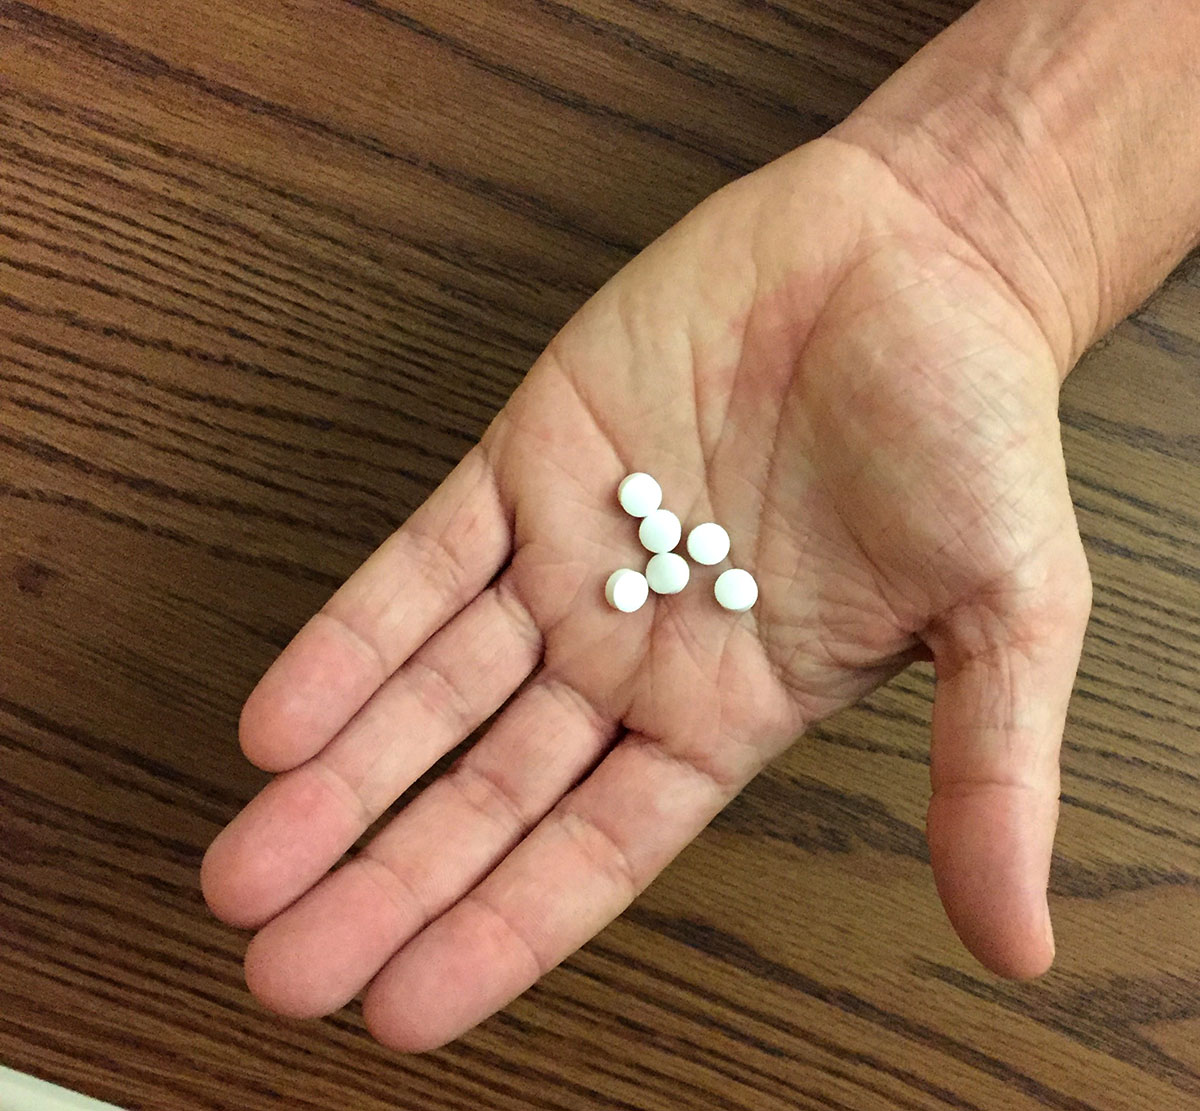 Hand holding six white pills